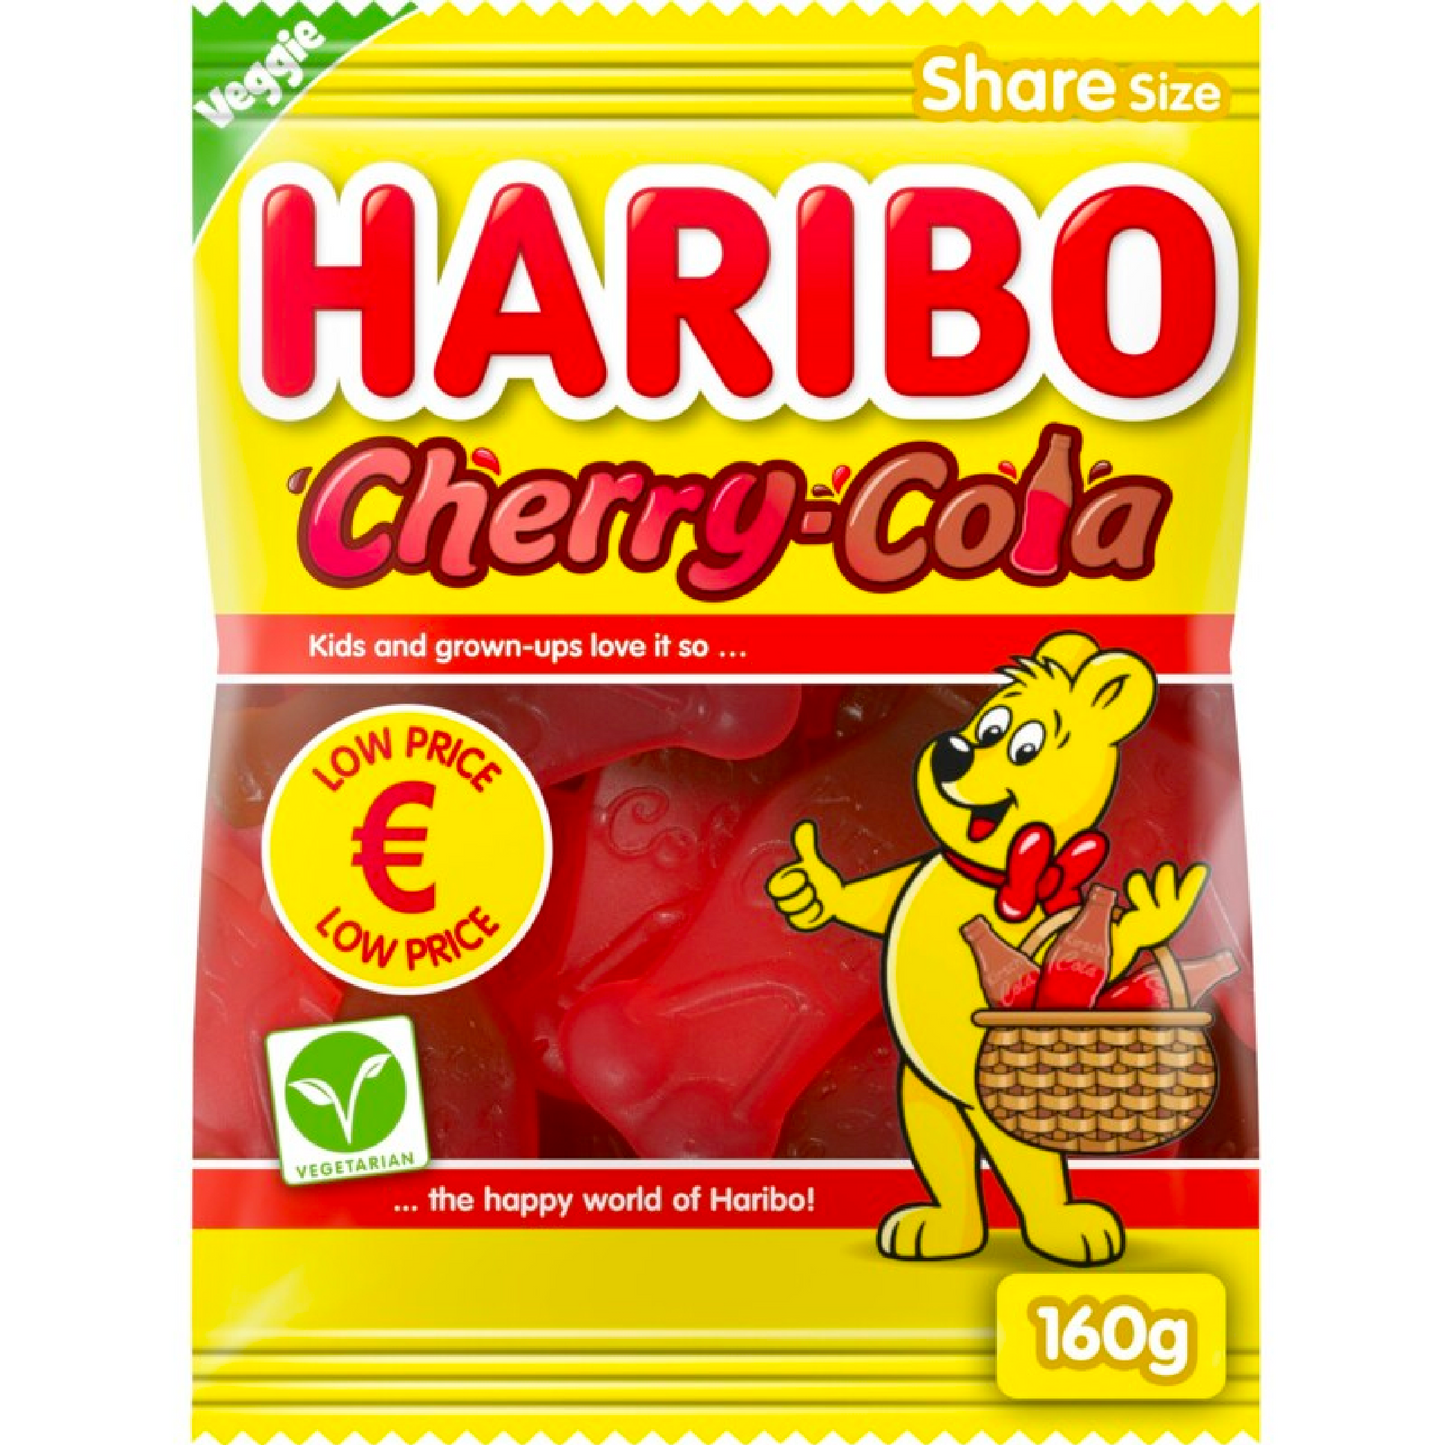 Haribo Cherry-Cola 160g